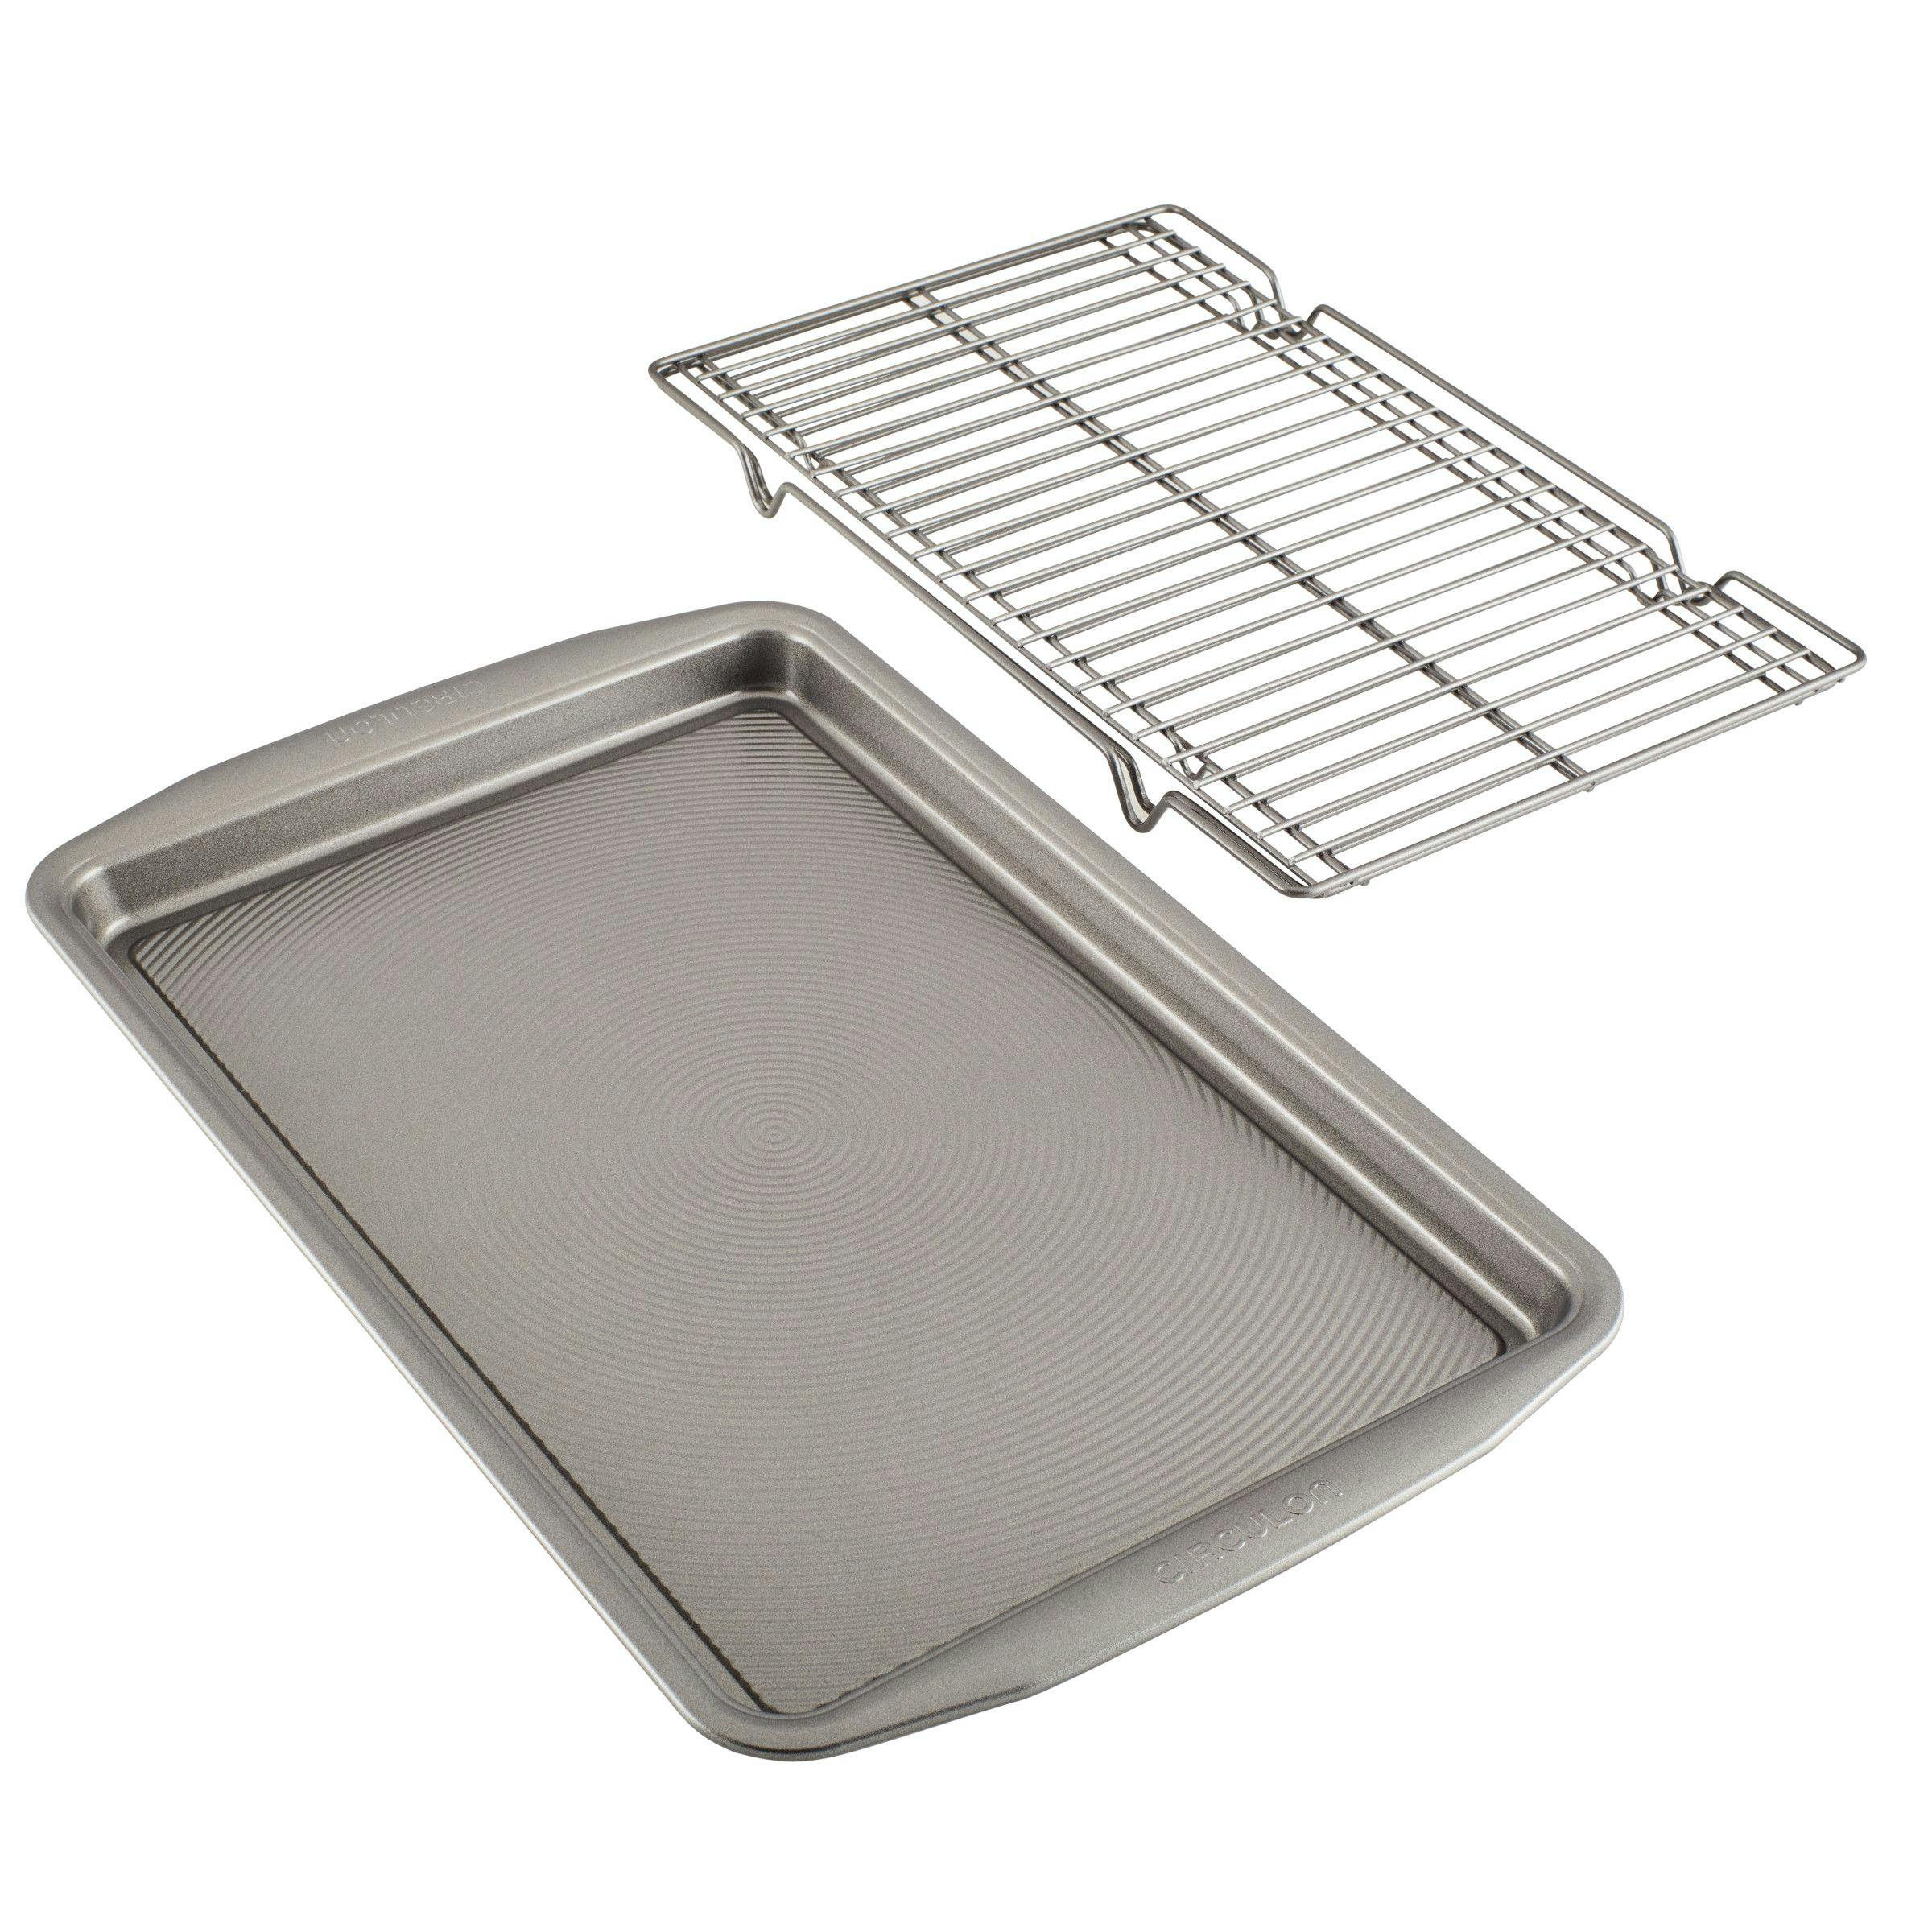 Circulon Bakeware 11 x 17-in Baking Sheet Pan and Cooling Rack Set, 3-Piece, Silver